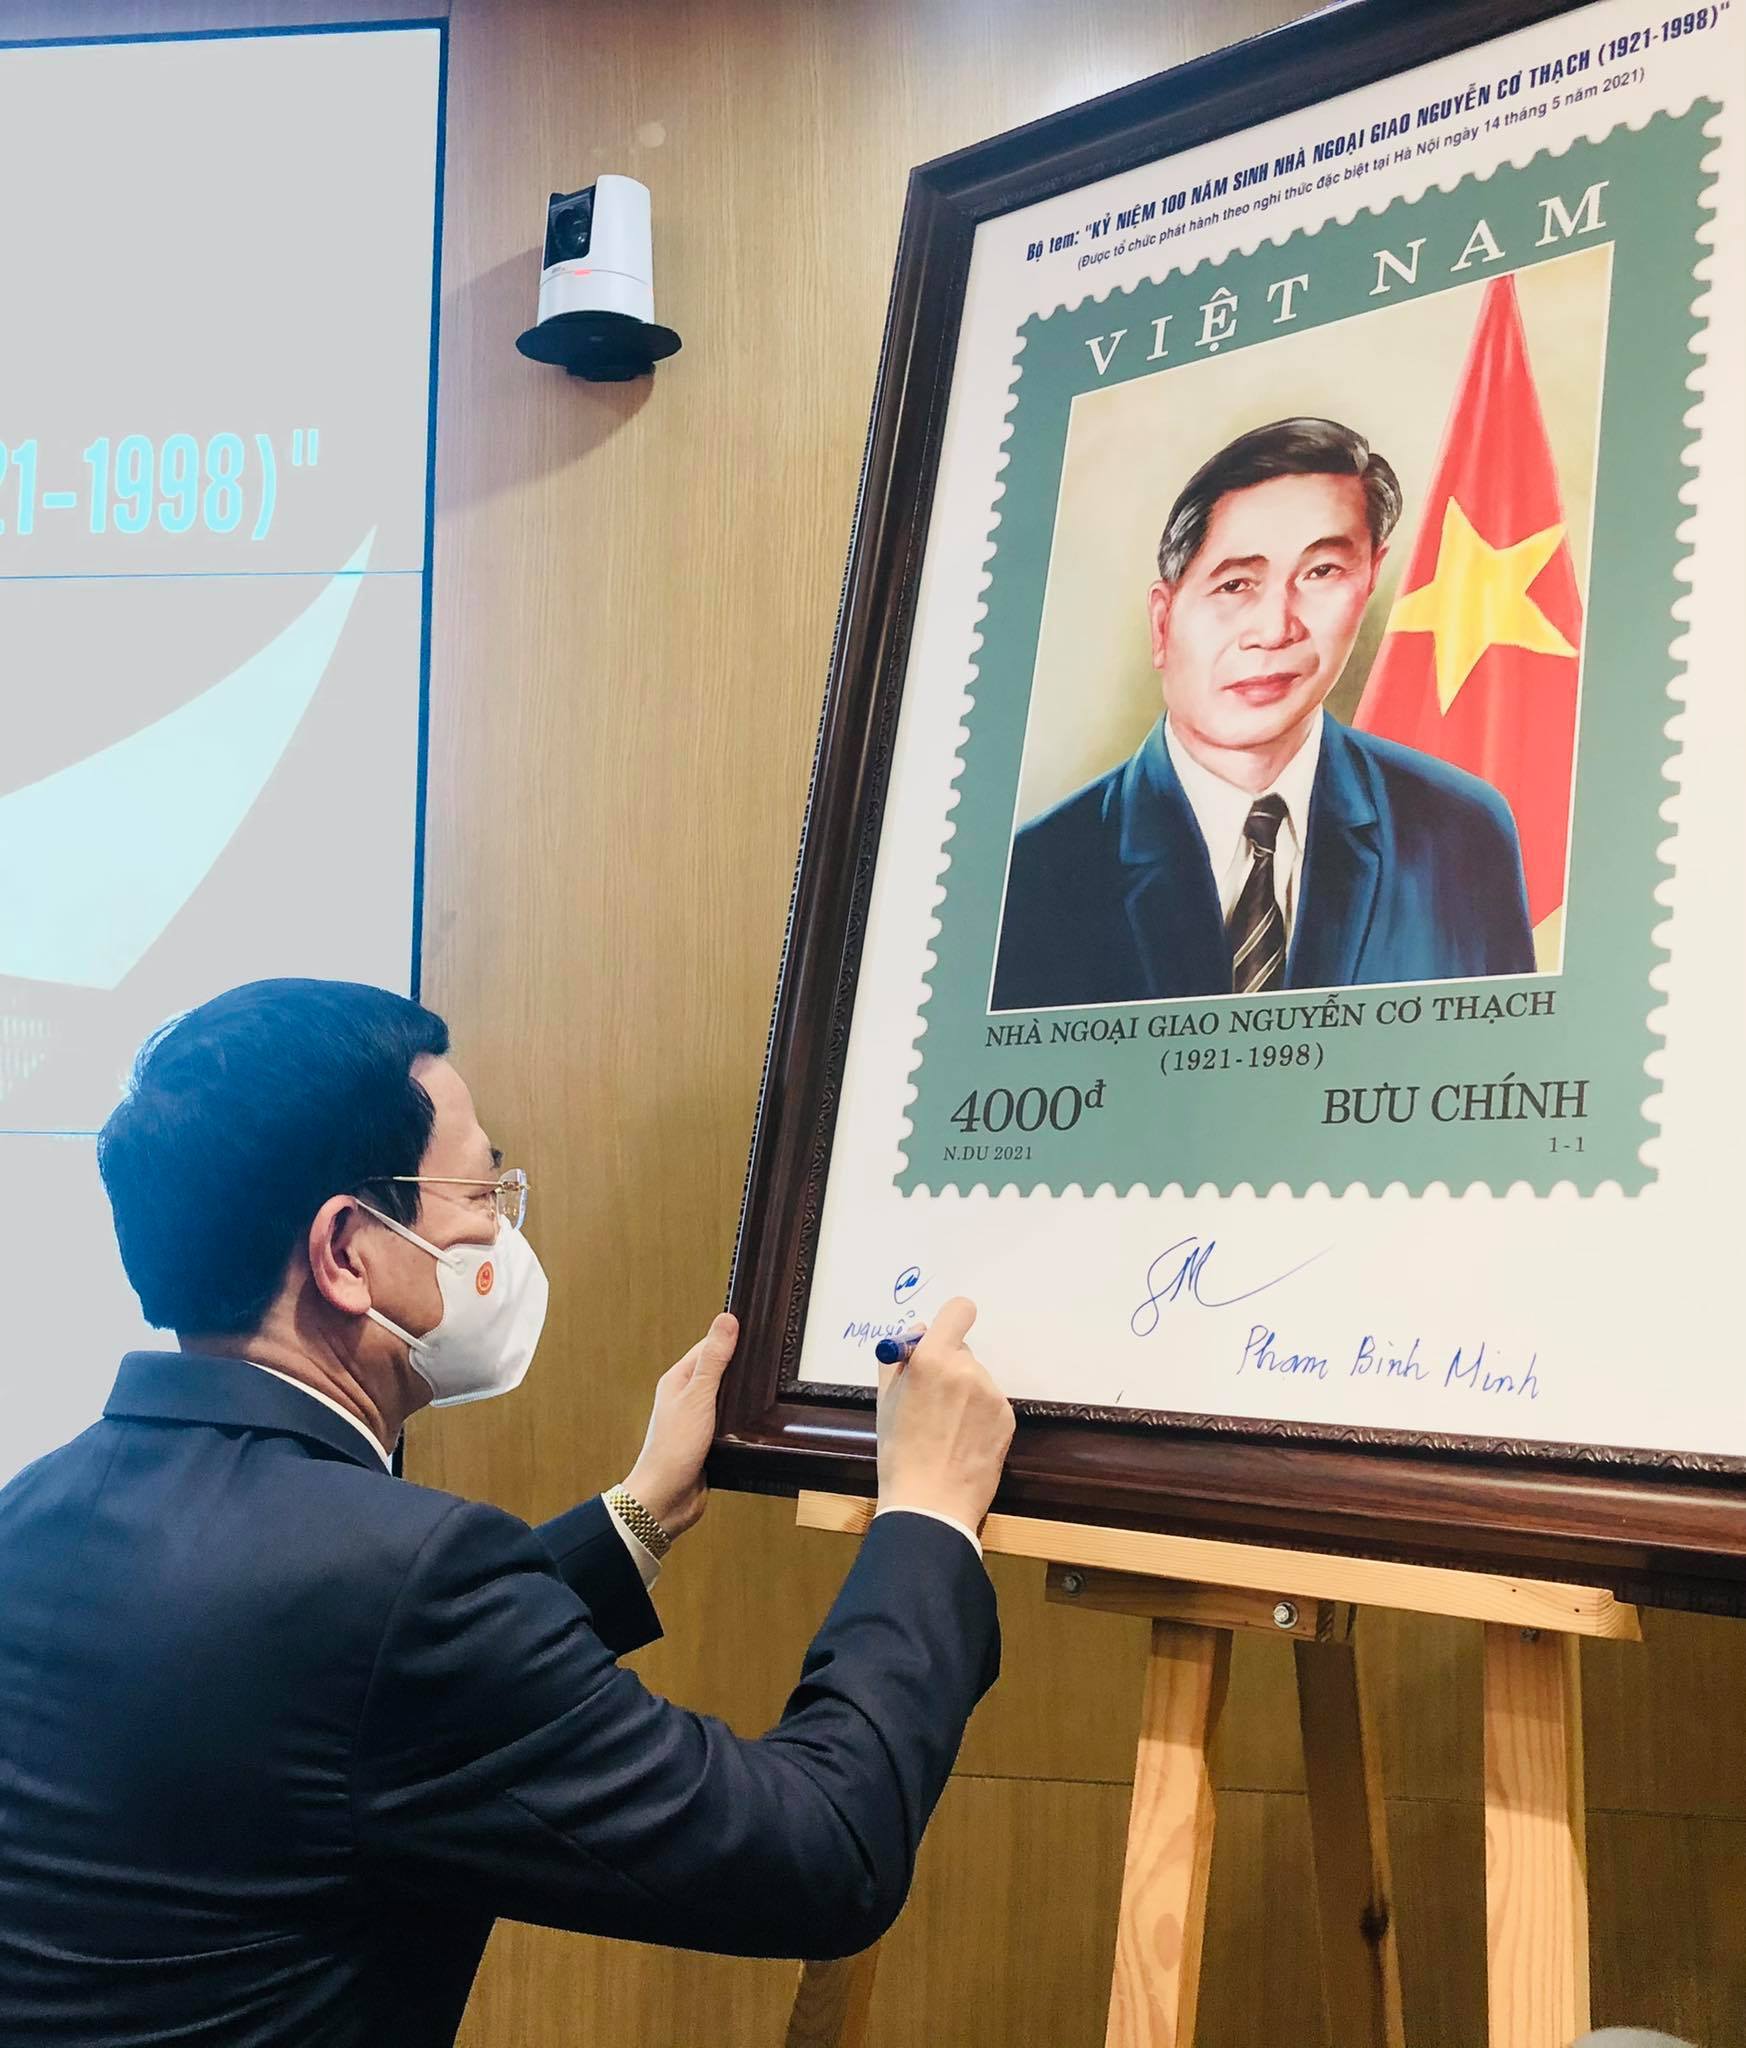 Phát hành đặc biệt bộ tem đầu tiên về một nhà ngoại giao Việt Nam